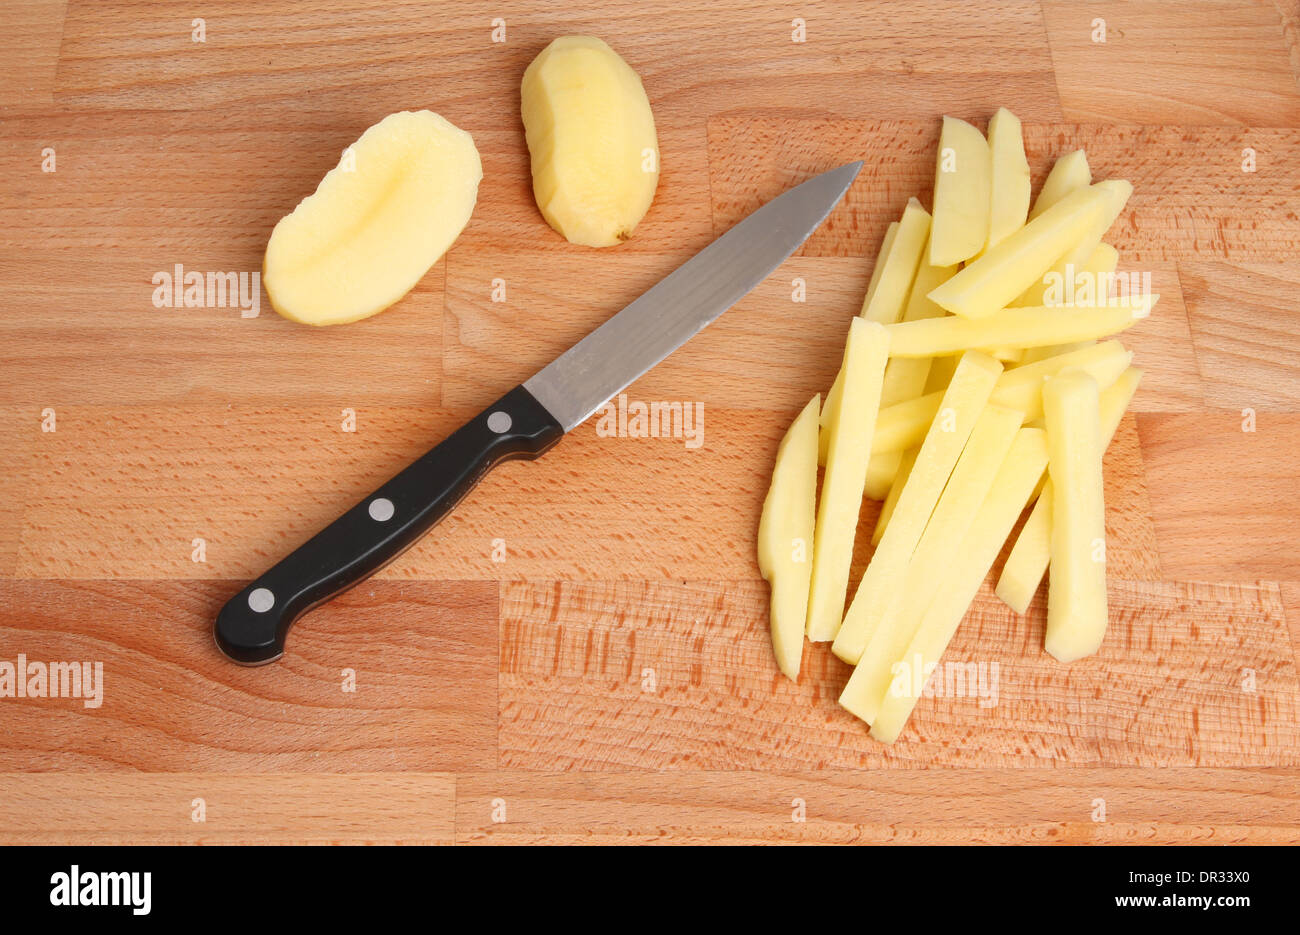 Pommes frites schneiden, Messer und Kartoffel auf einem Holzbrett Stockfoto